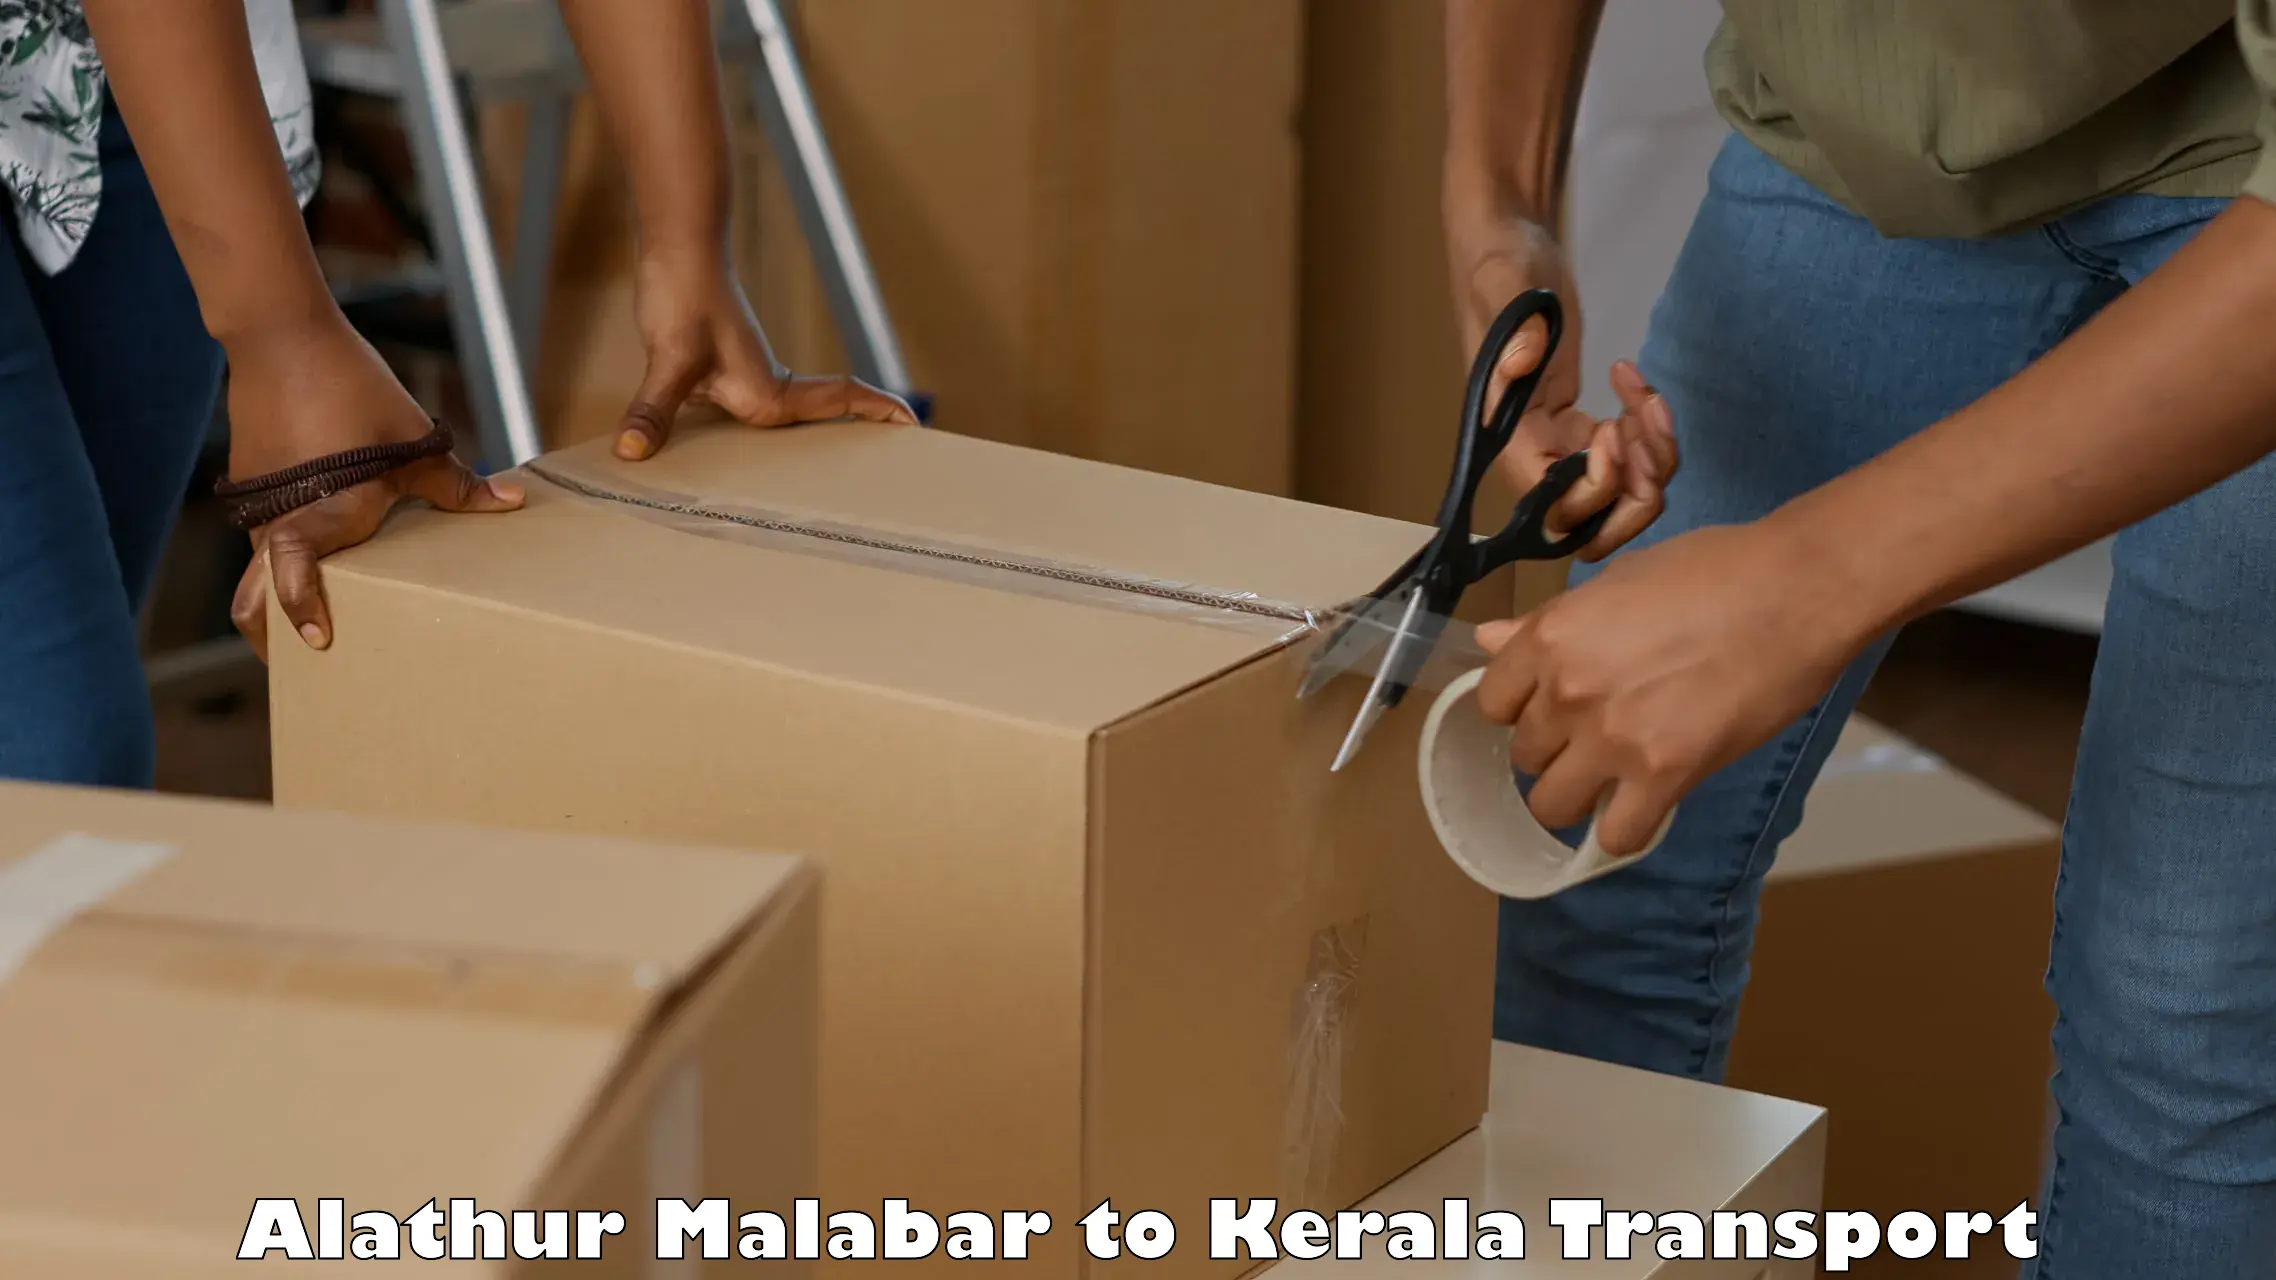 Bike transport service Alathur Malabar to Mavelikara